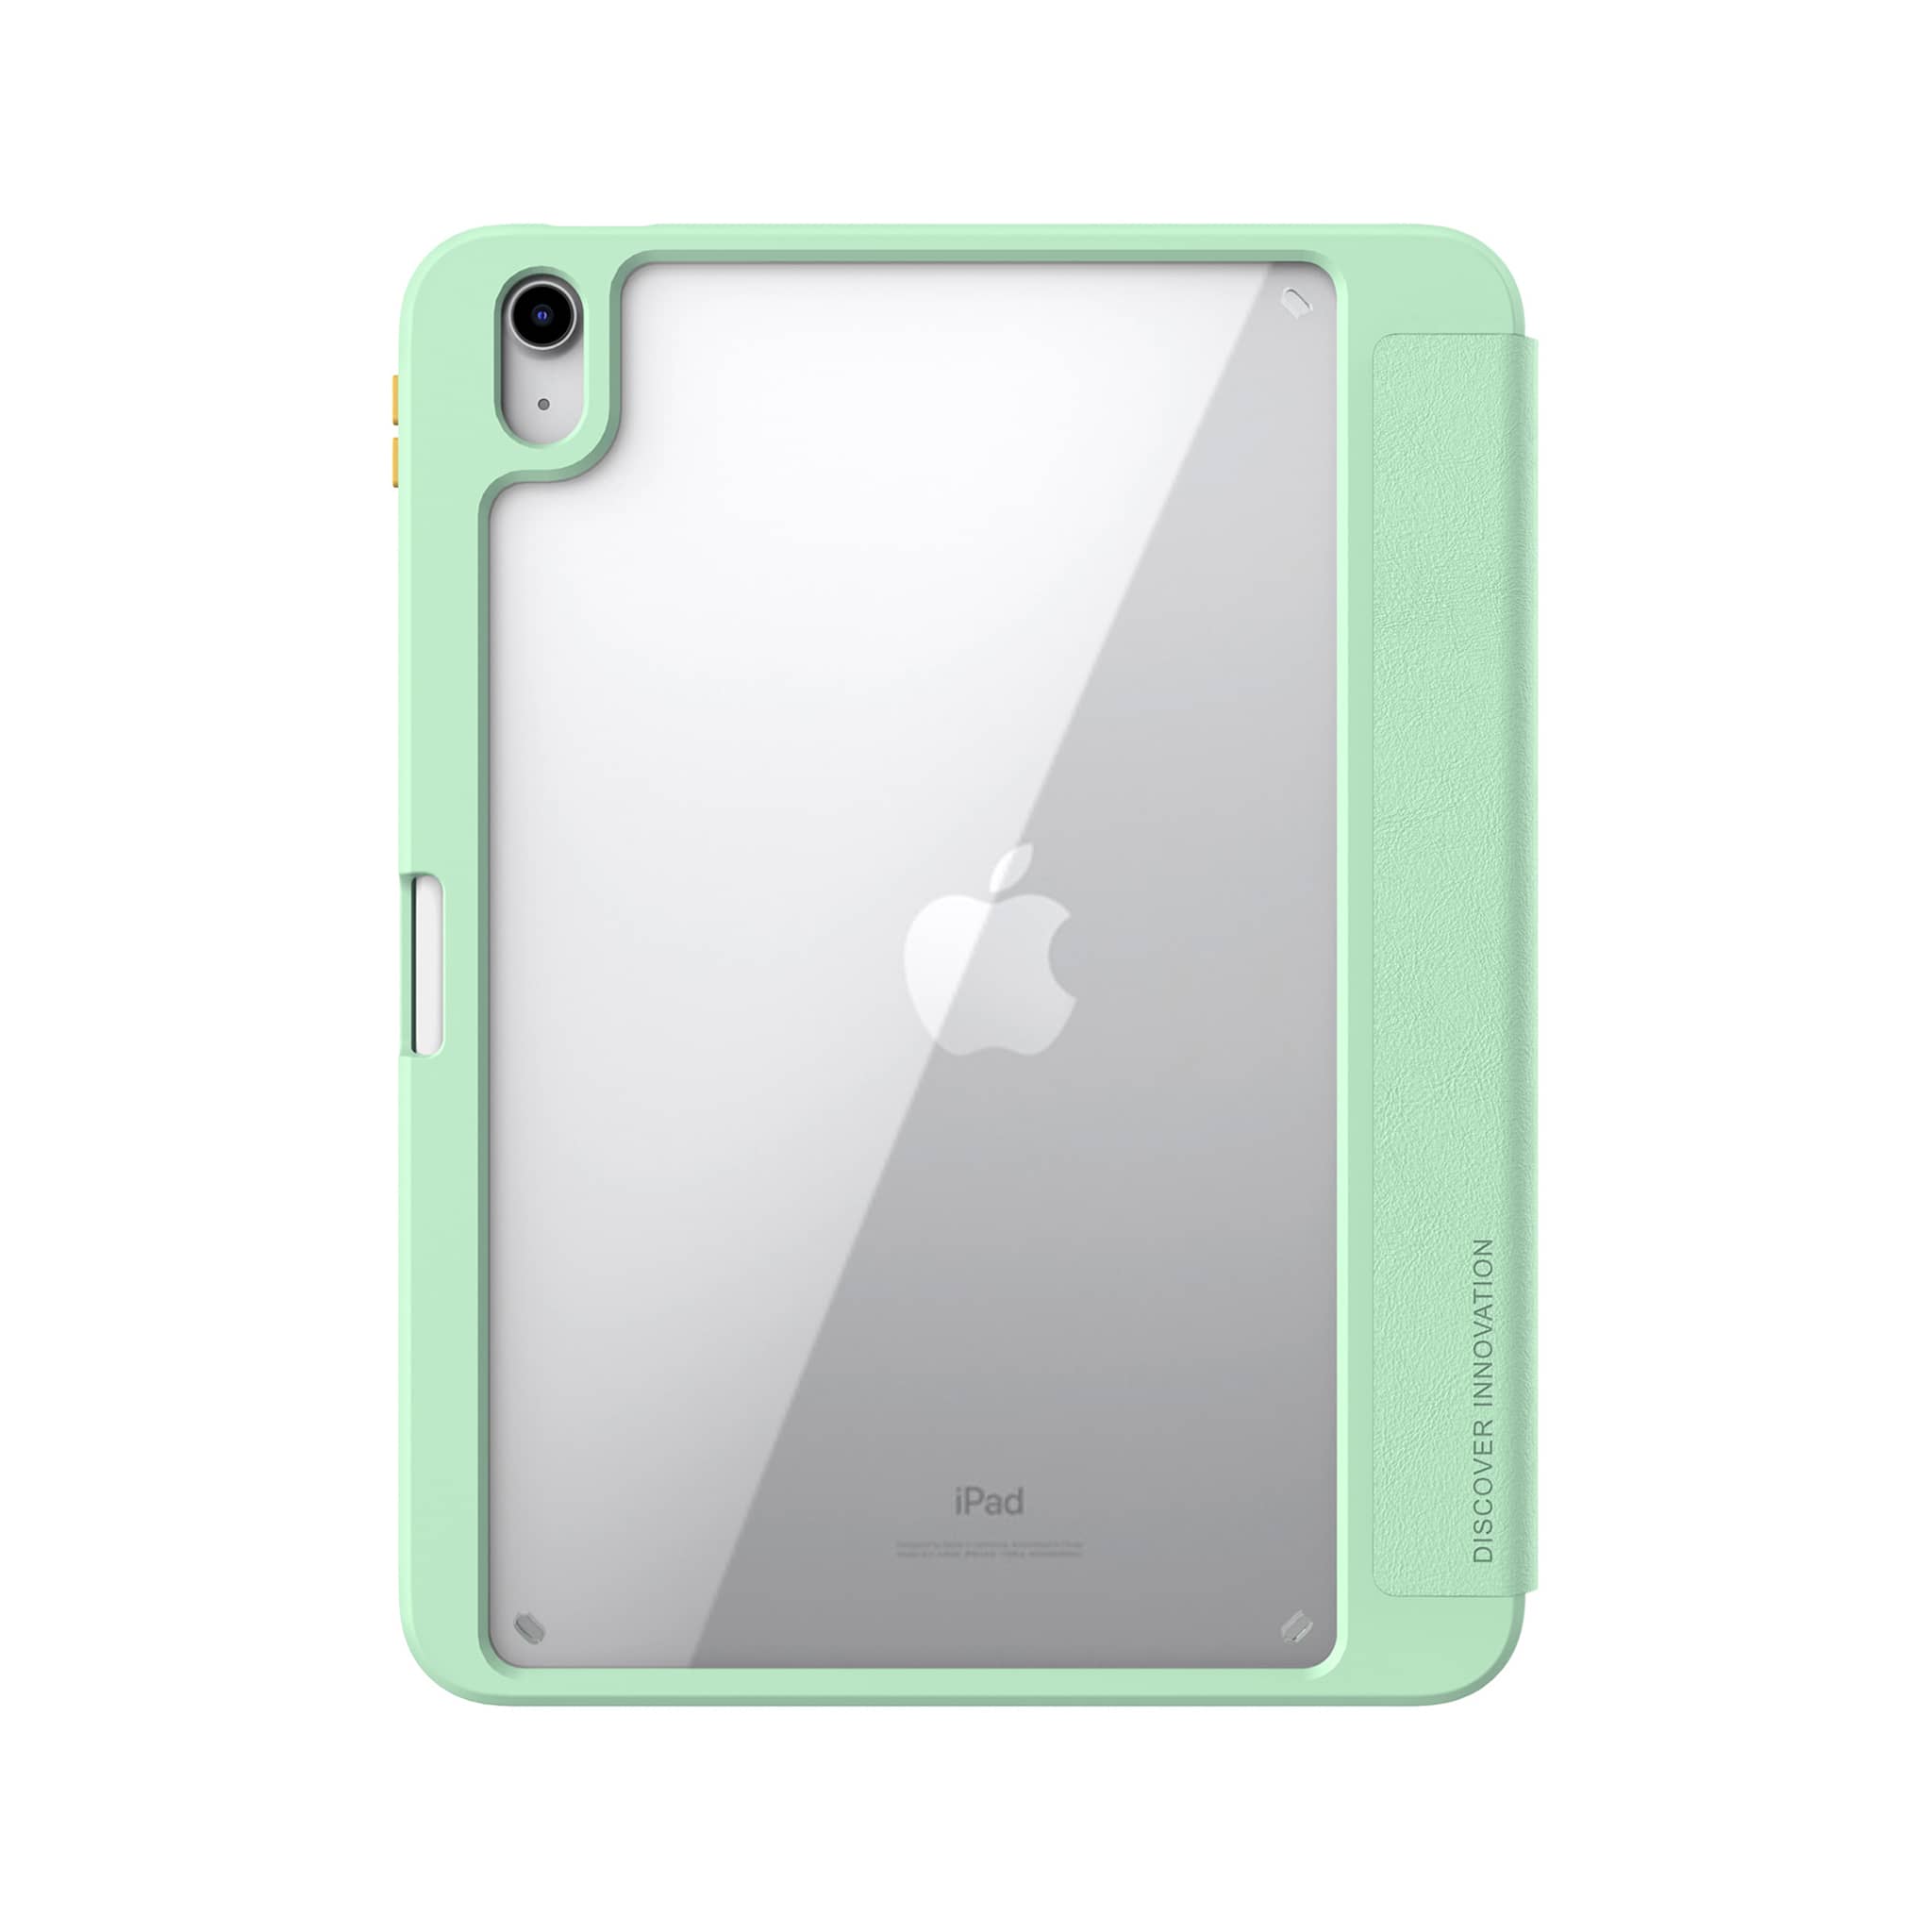 8.3 inch iPad mini 6th Gen/Mint Green